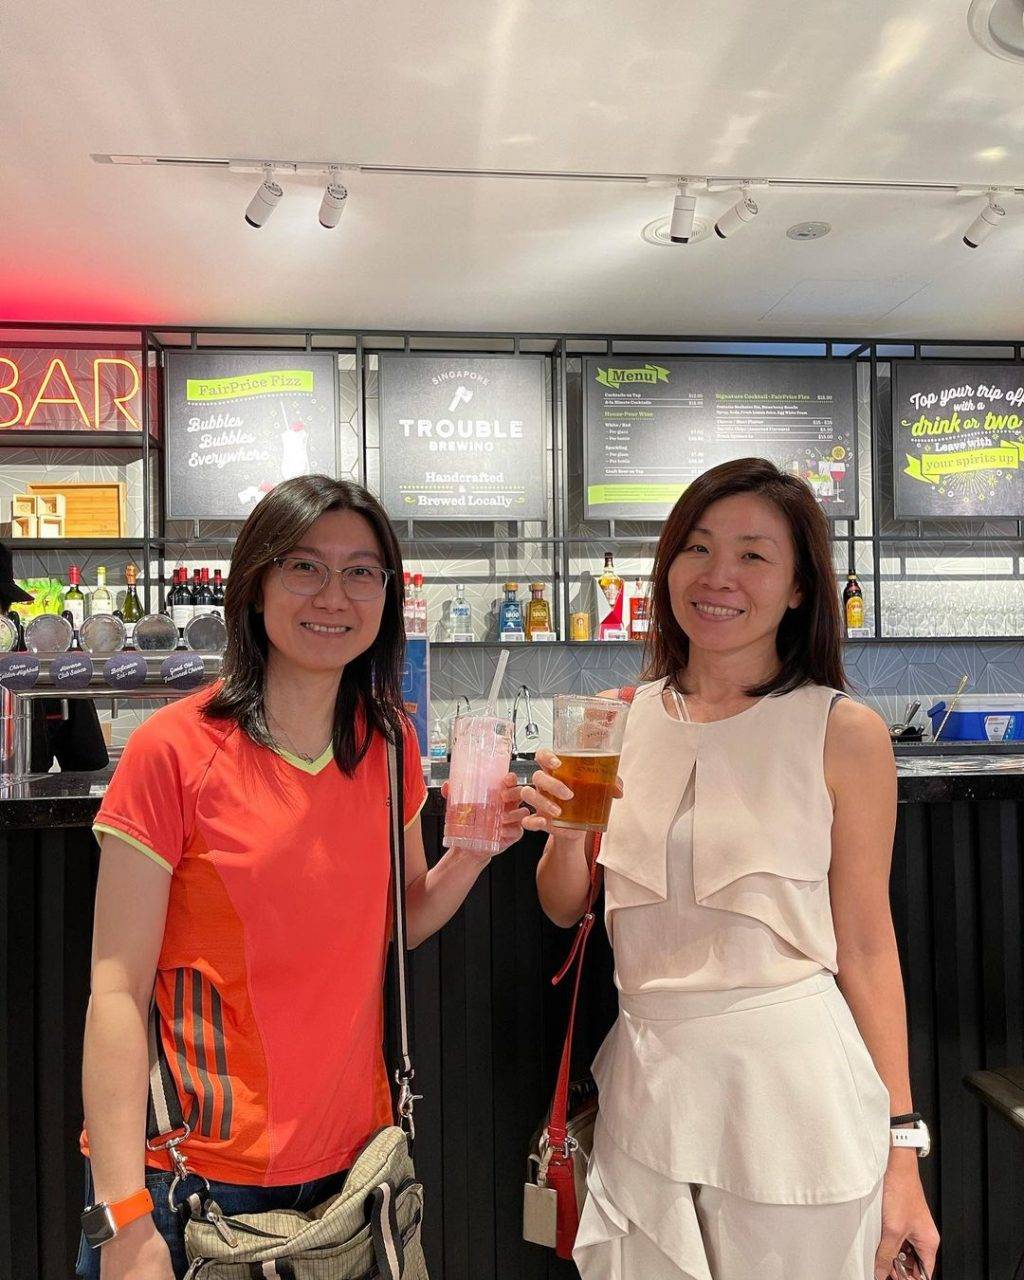 新加坡首间鸡尾酒吧超市🍷FairPrice Xtra Parkway Parade开张啦🎉附设用餐区、超多美食投喂你